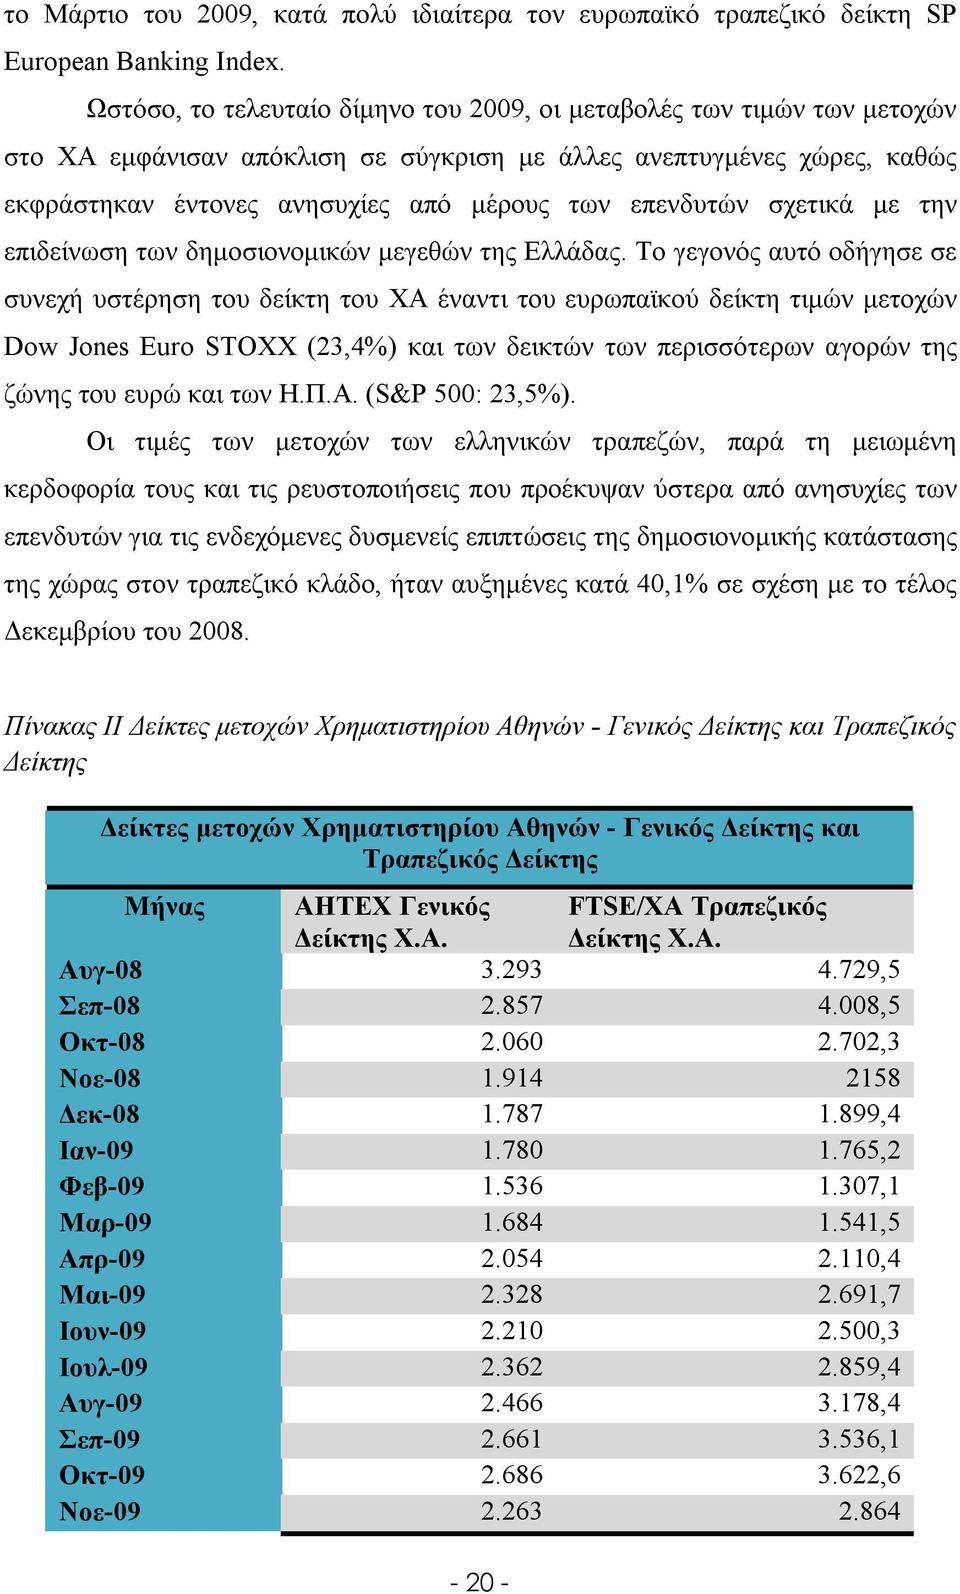 επενδυτών σχετικά με την επιδείνωση των δημοσιονομικών μεγεθών της Ελλάδας.